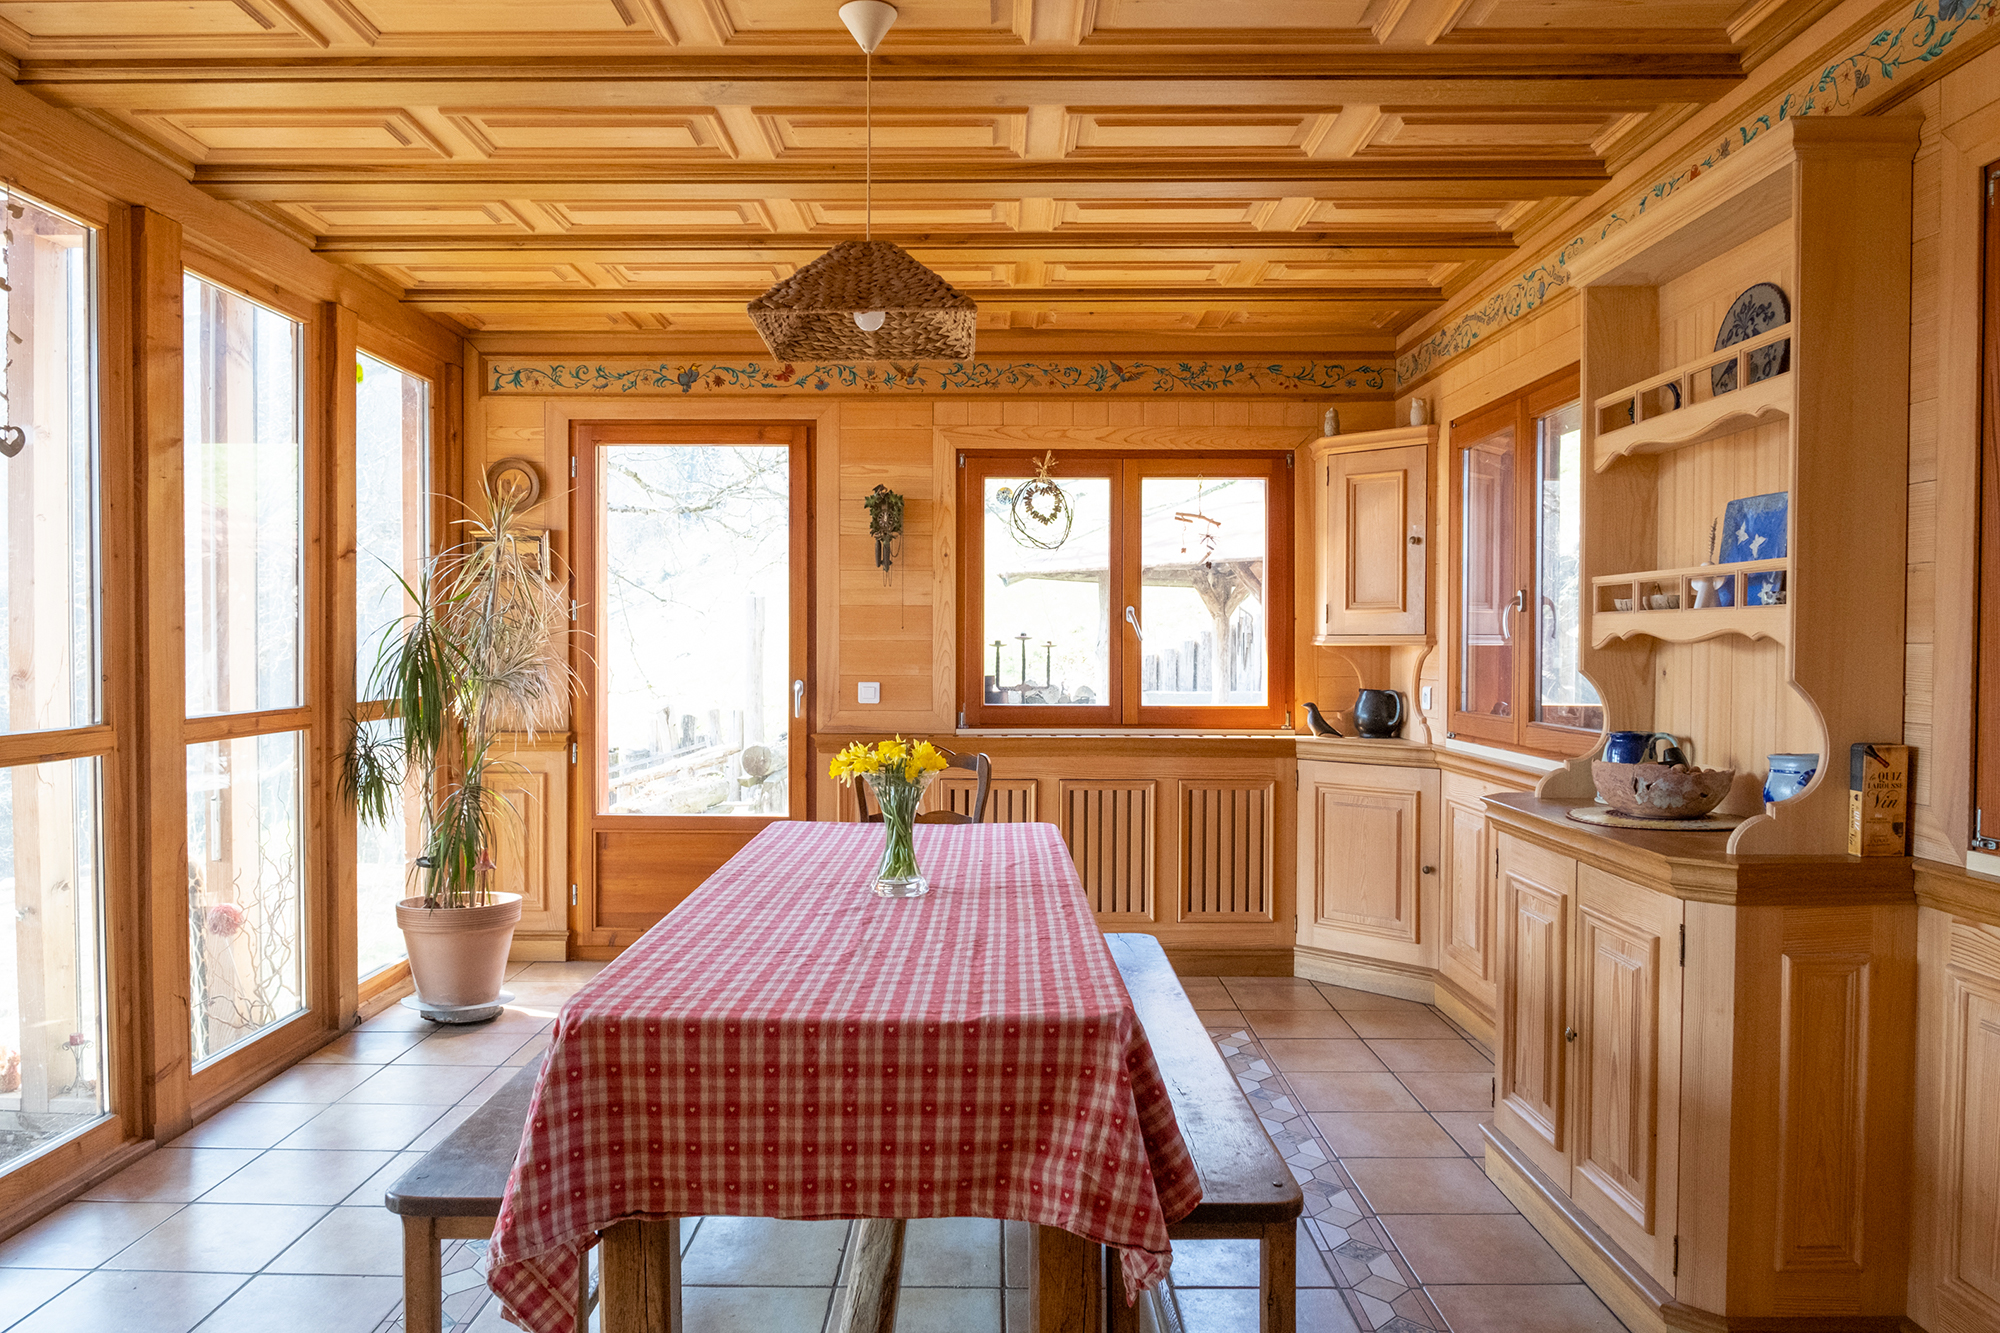 Cuisine alsacienne en bois de chêne et épicéa. Vaisselier ouvert, grand table à manger, plafond en bois